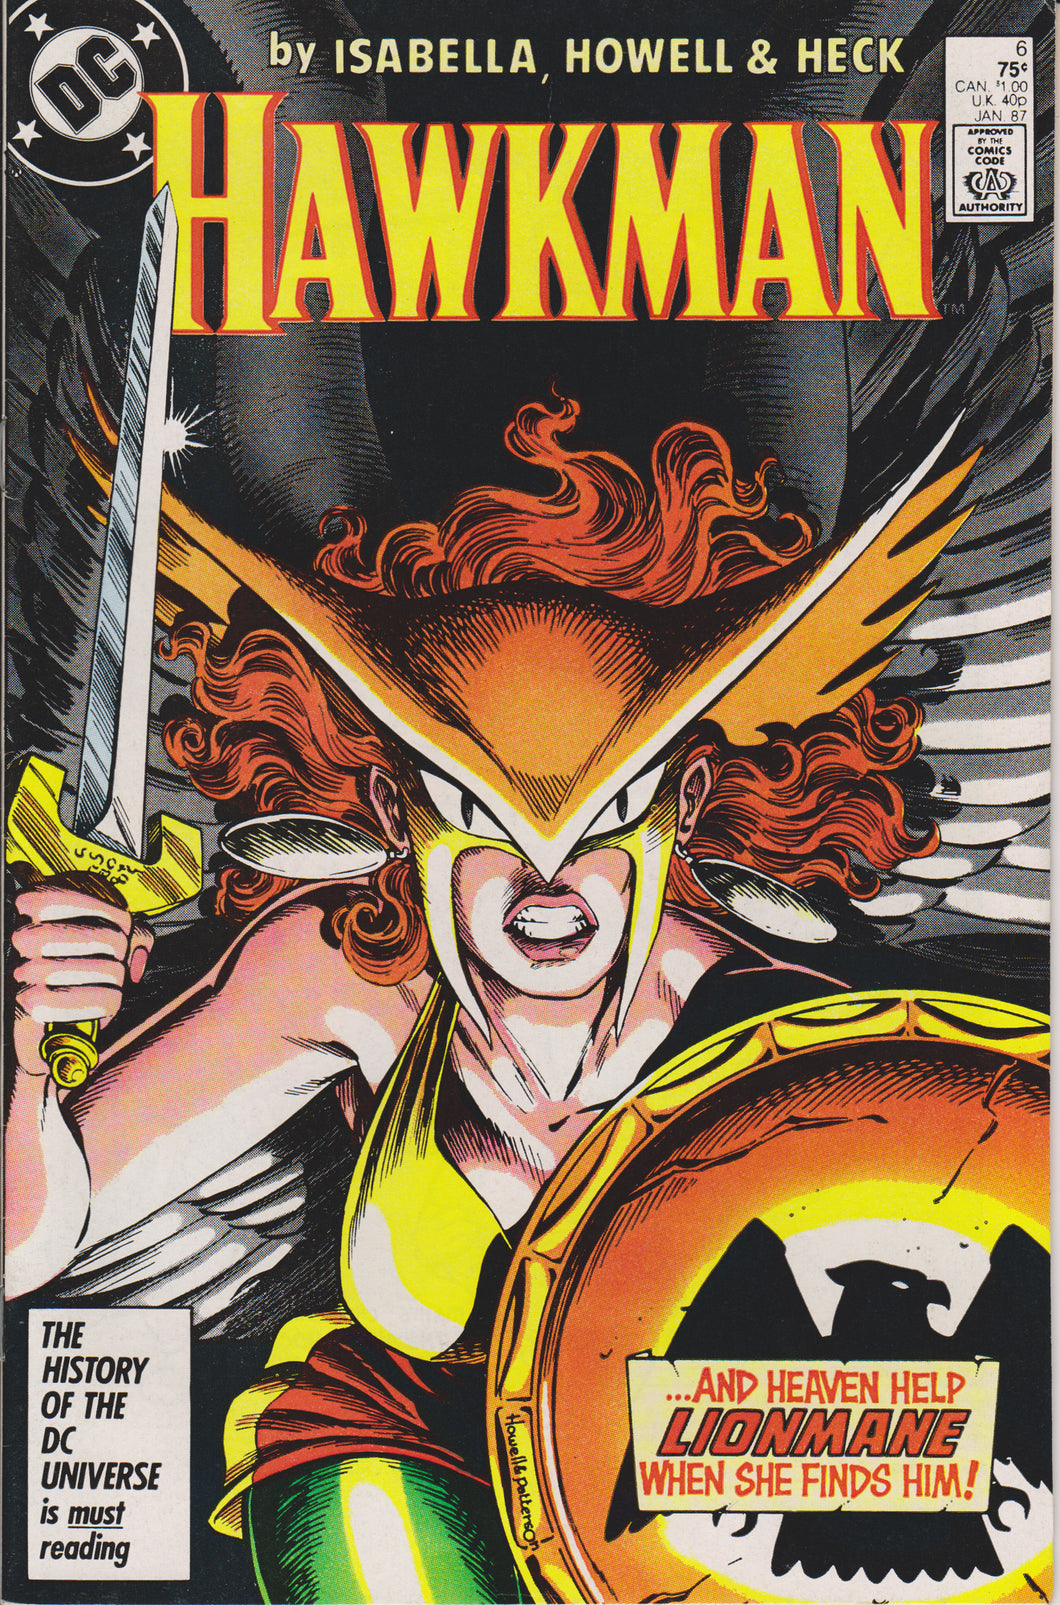 HAWKMAN #6 (1986) COMIC BOOK ~ DC COMICS